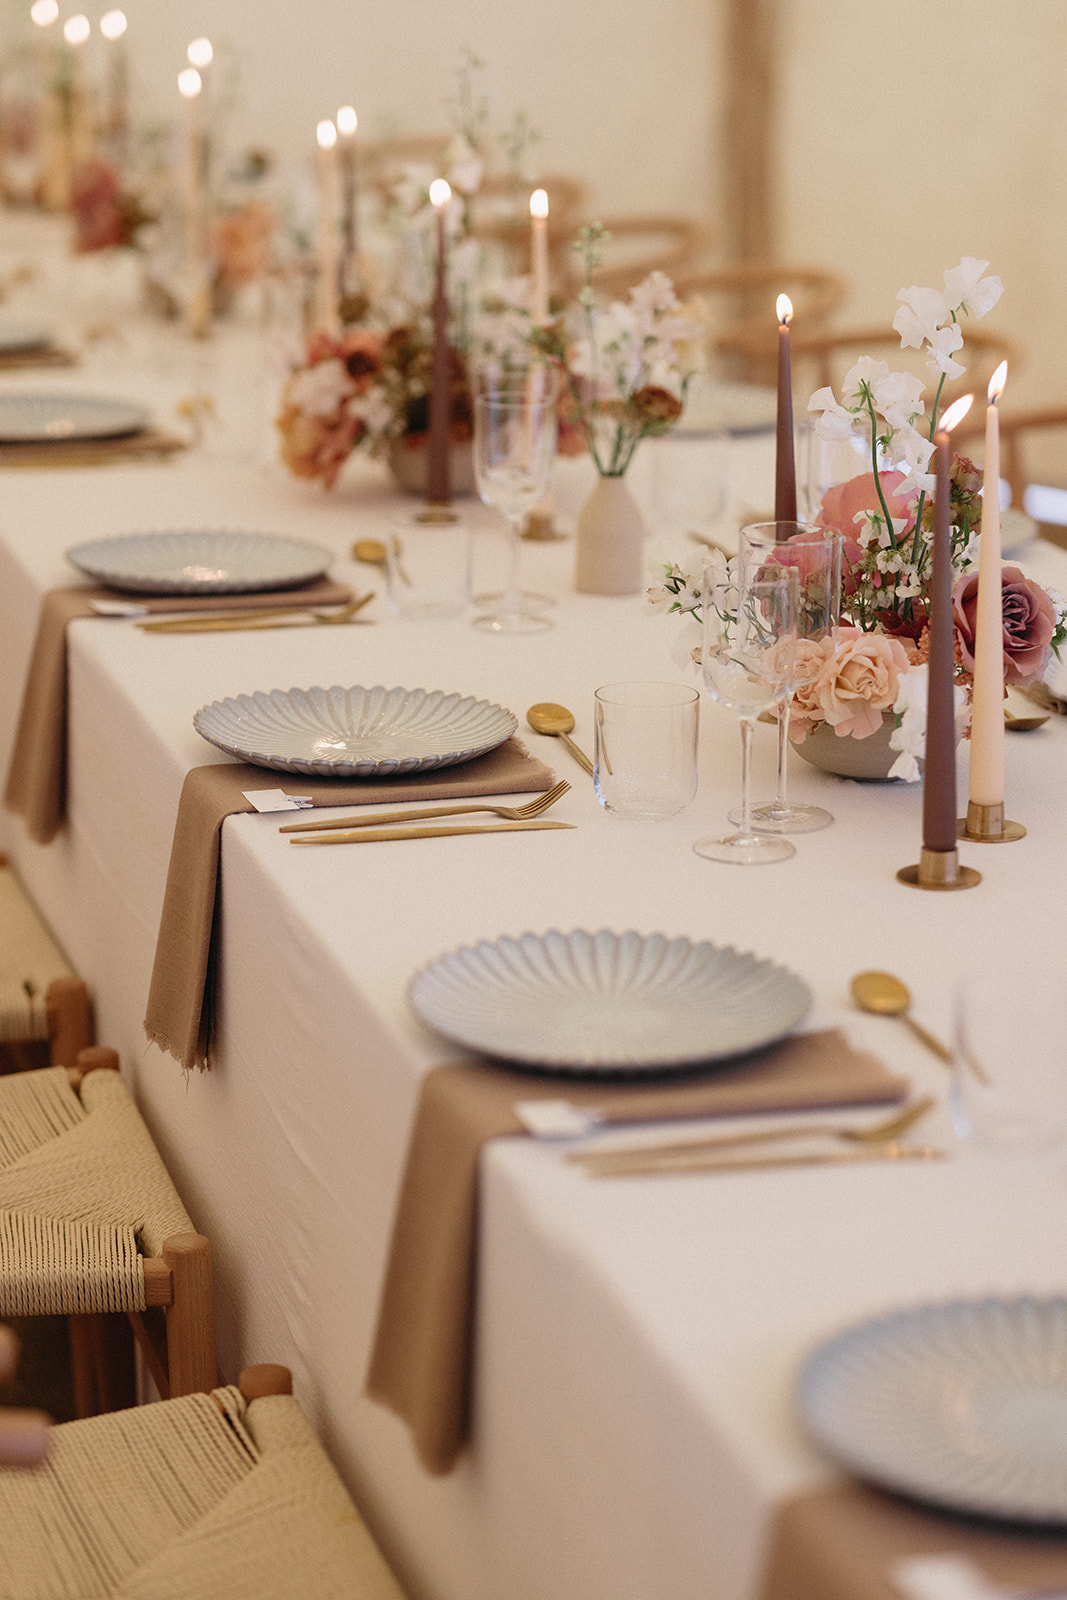 Minimalist table setting featuring elegant dinnerware